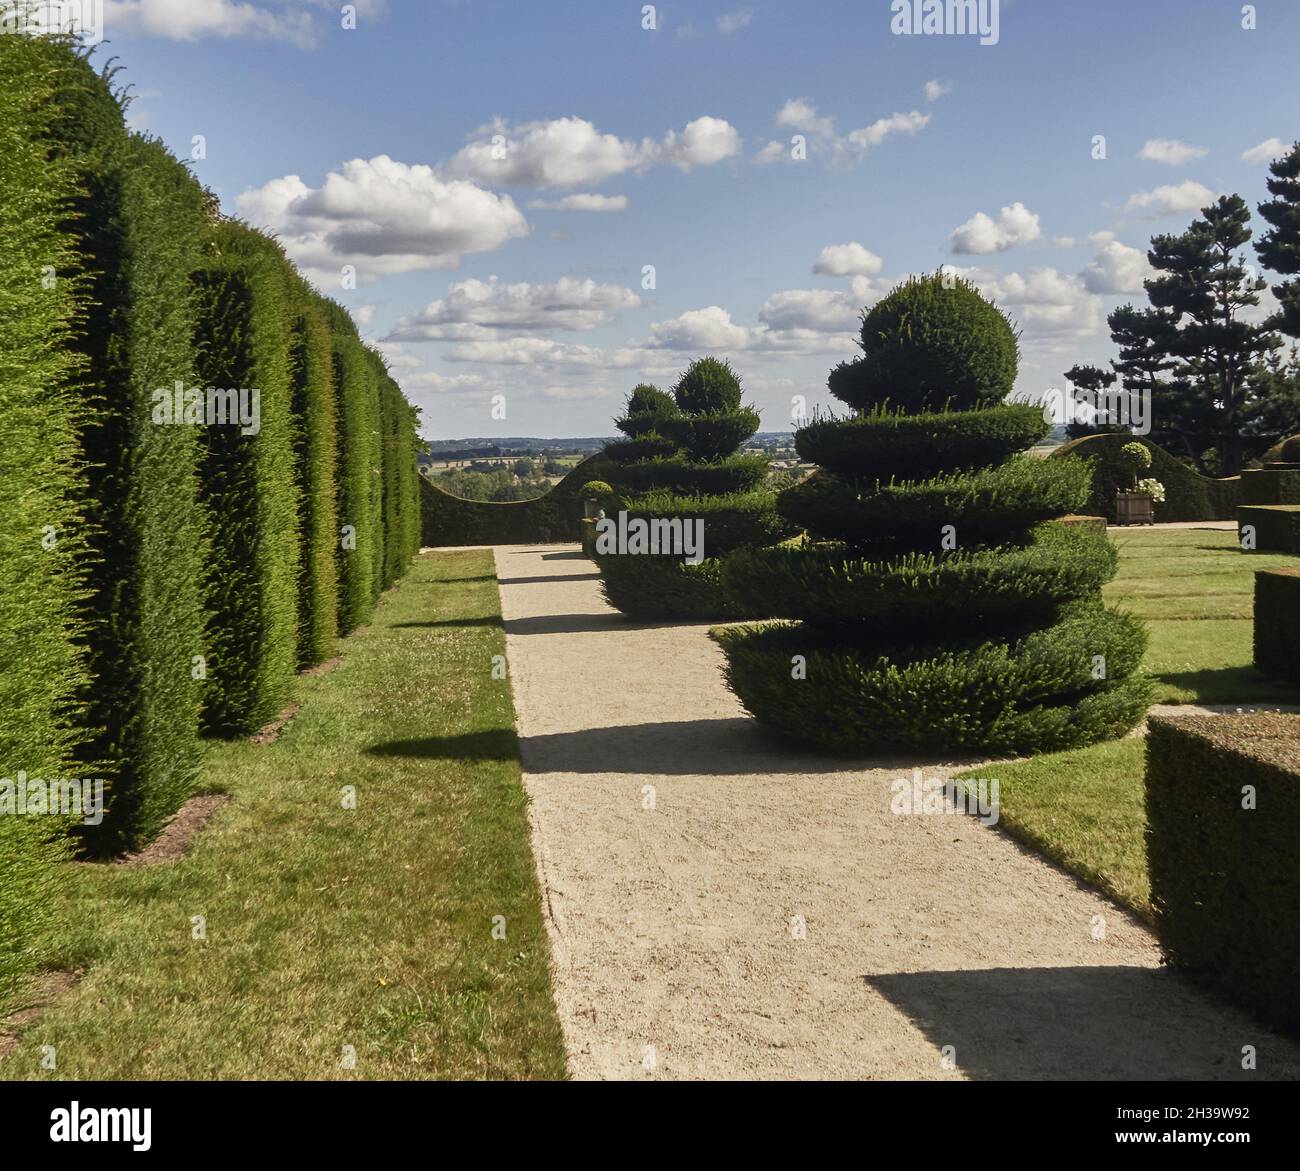 Bazouges la Perouse, France. Ille-et-Vilaine department, Britain. The gardens of Chateau de La Ballue in Bazouges la Perouse, are members of the prest Stock Photo